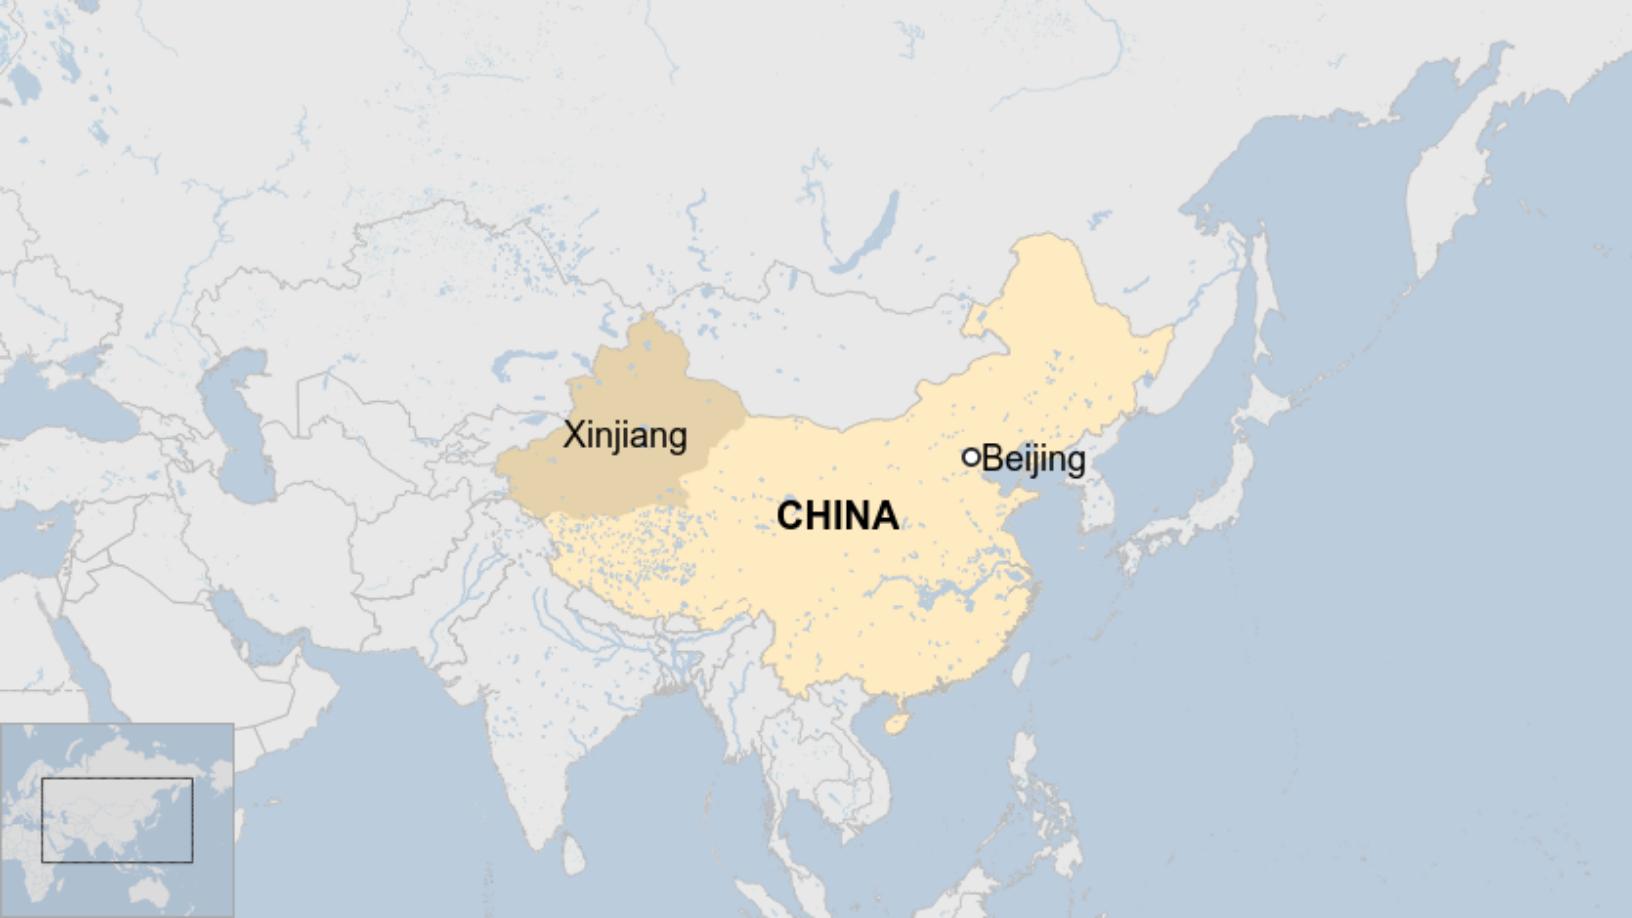 Map: Map of China showing Xinjiang region and Beijing